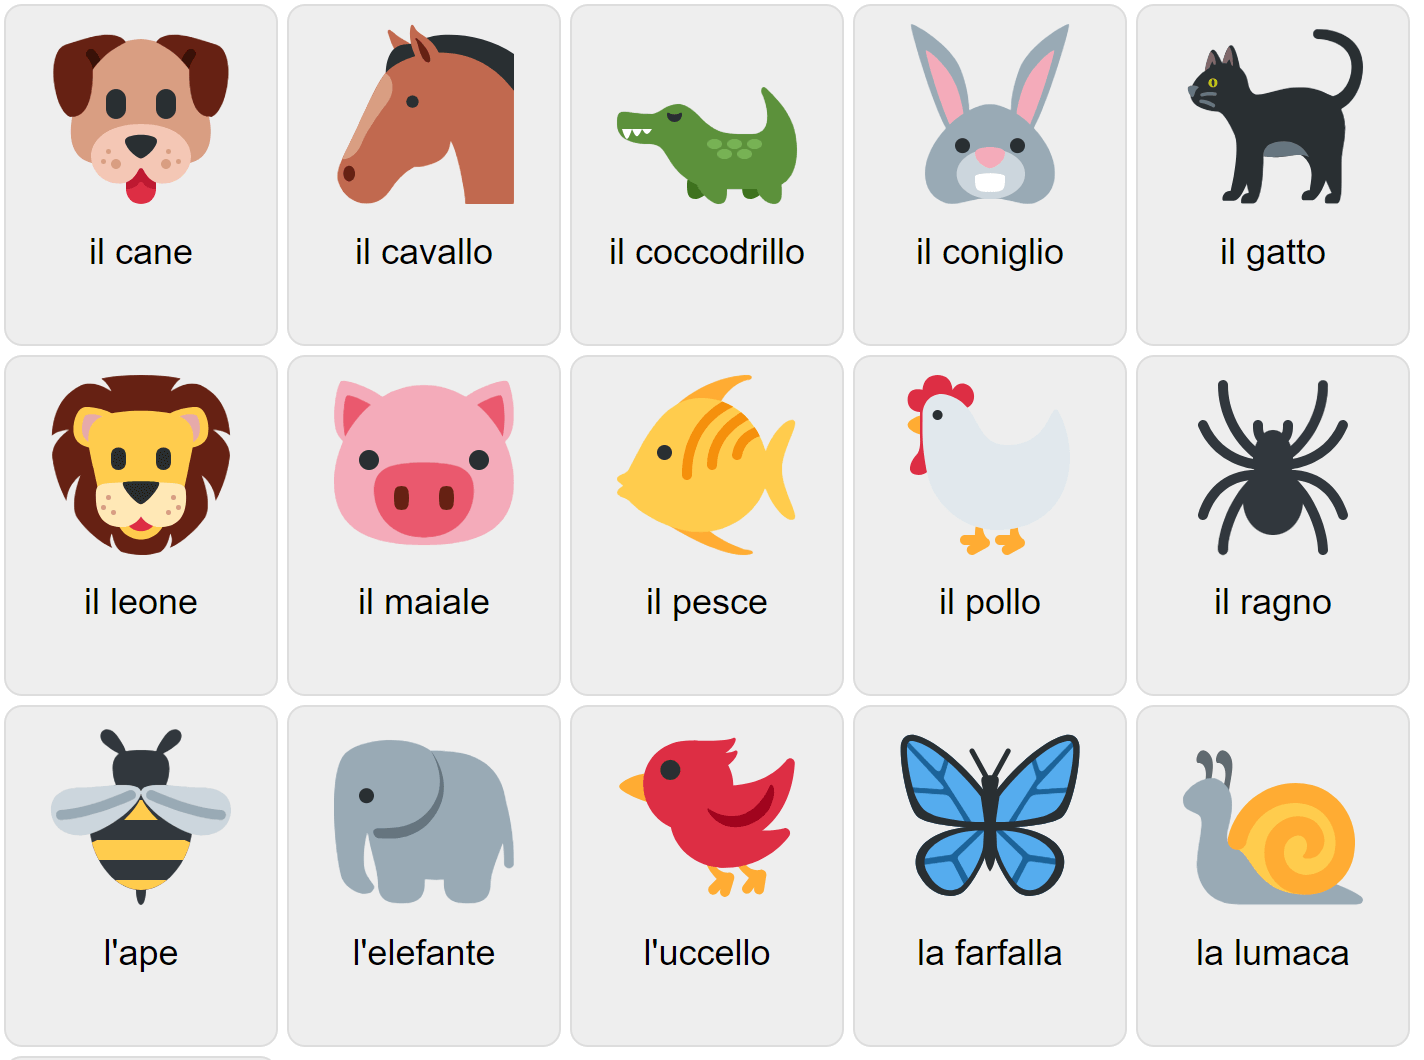 Тварини на італійській мові